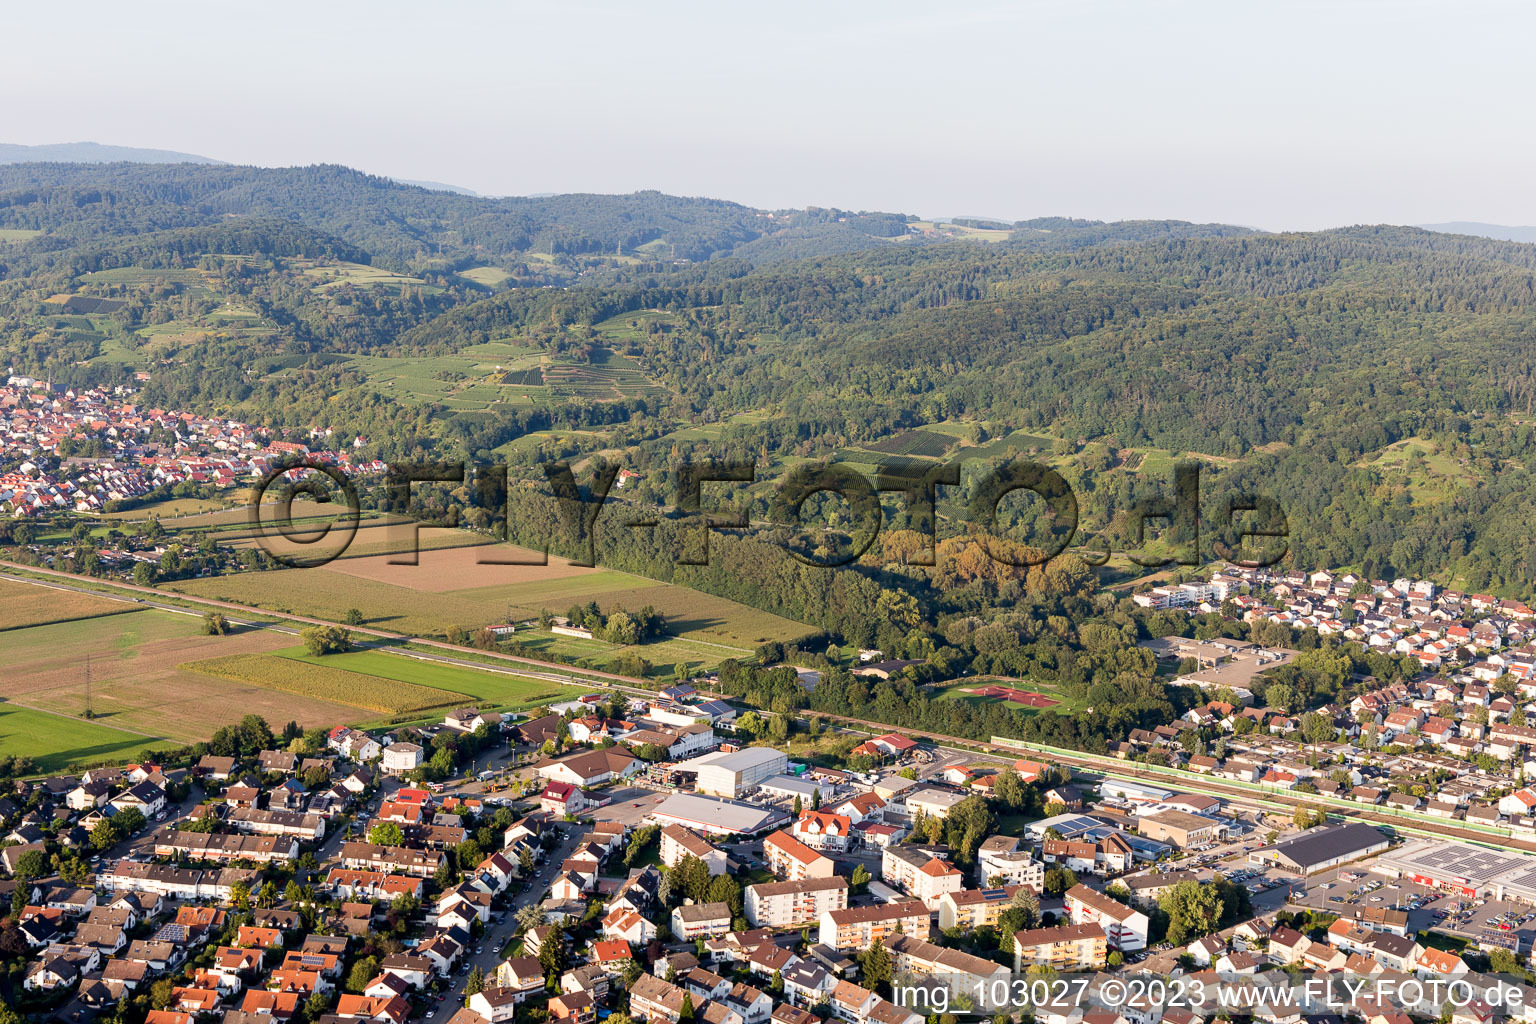 Hemsbach im Bundesland Baden-Württemberg, Deutschland von der Drohne aus gesehen